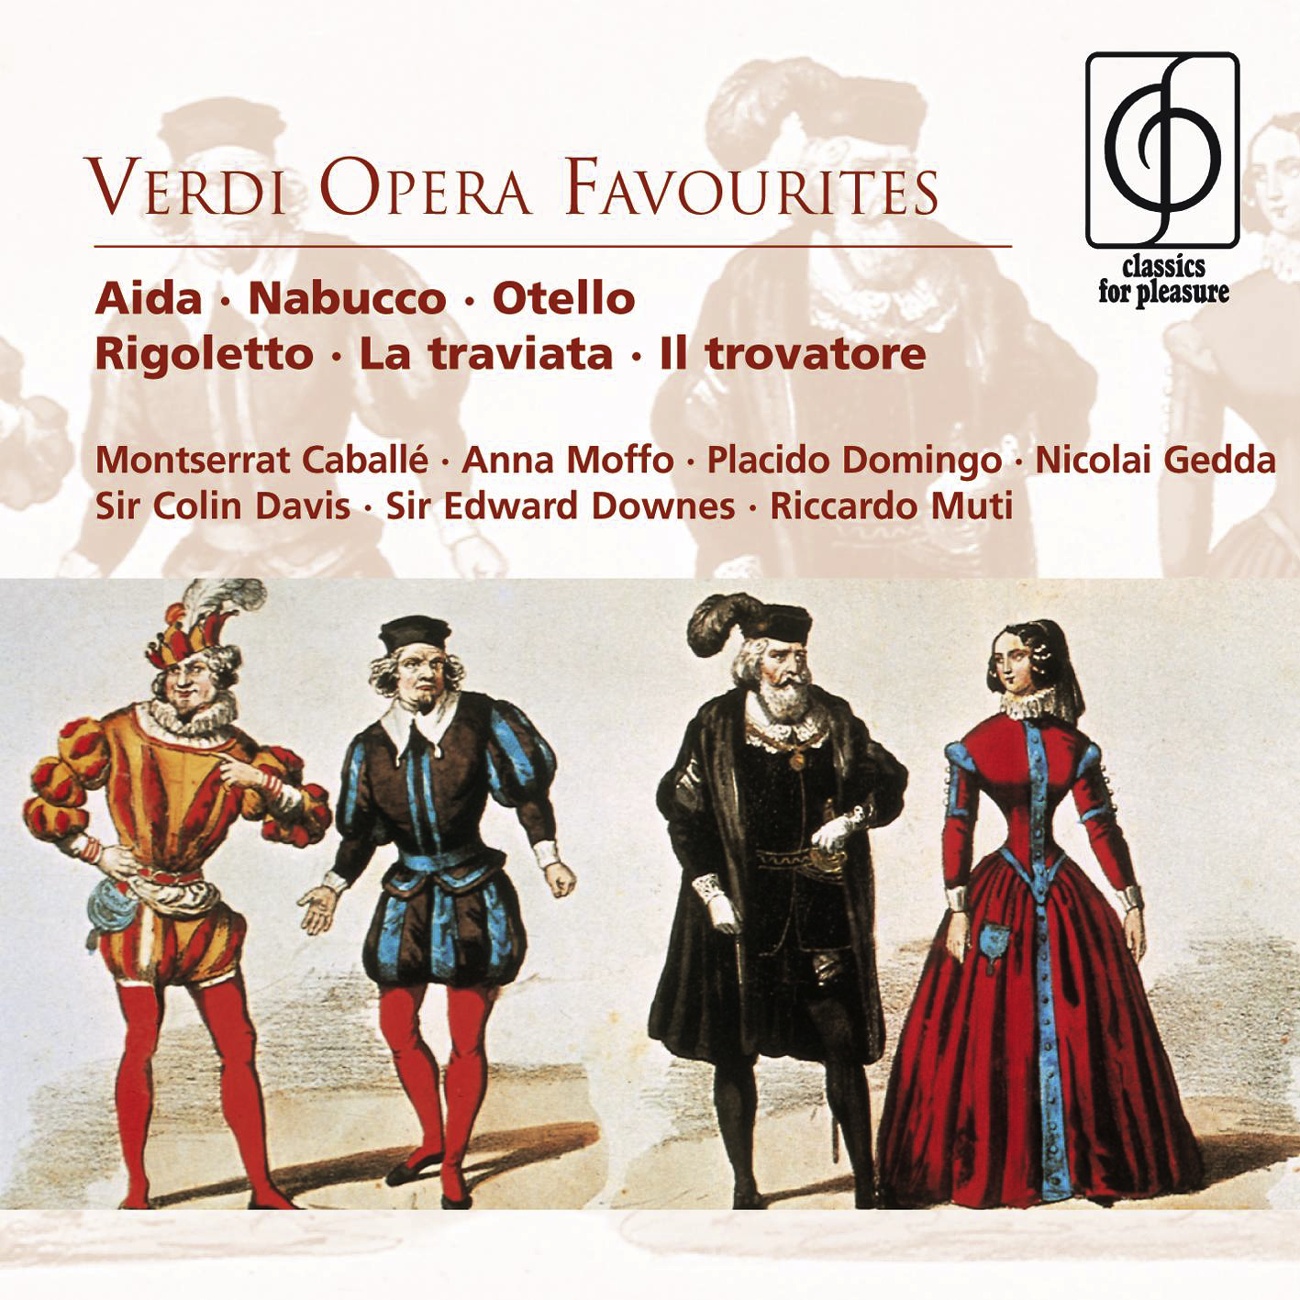 La Traviata 1990 Remastered Version: E strano... Ah, fors' e lui... Sempre libera Act I